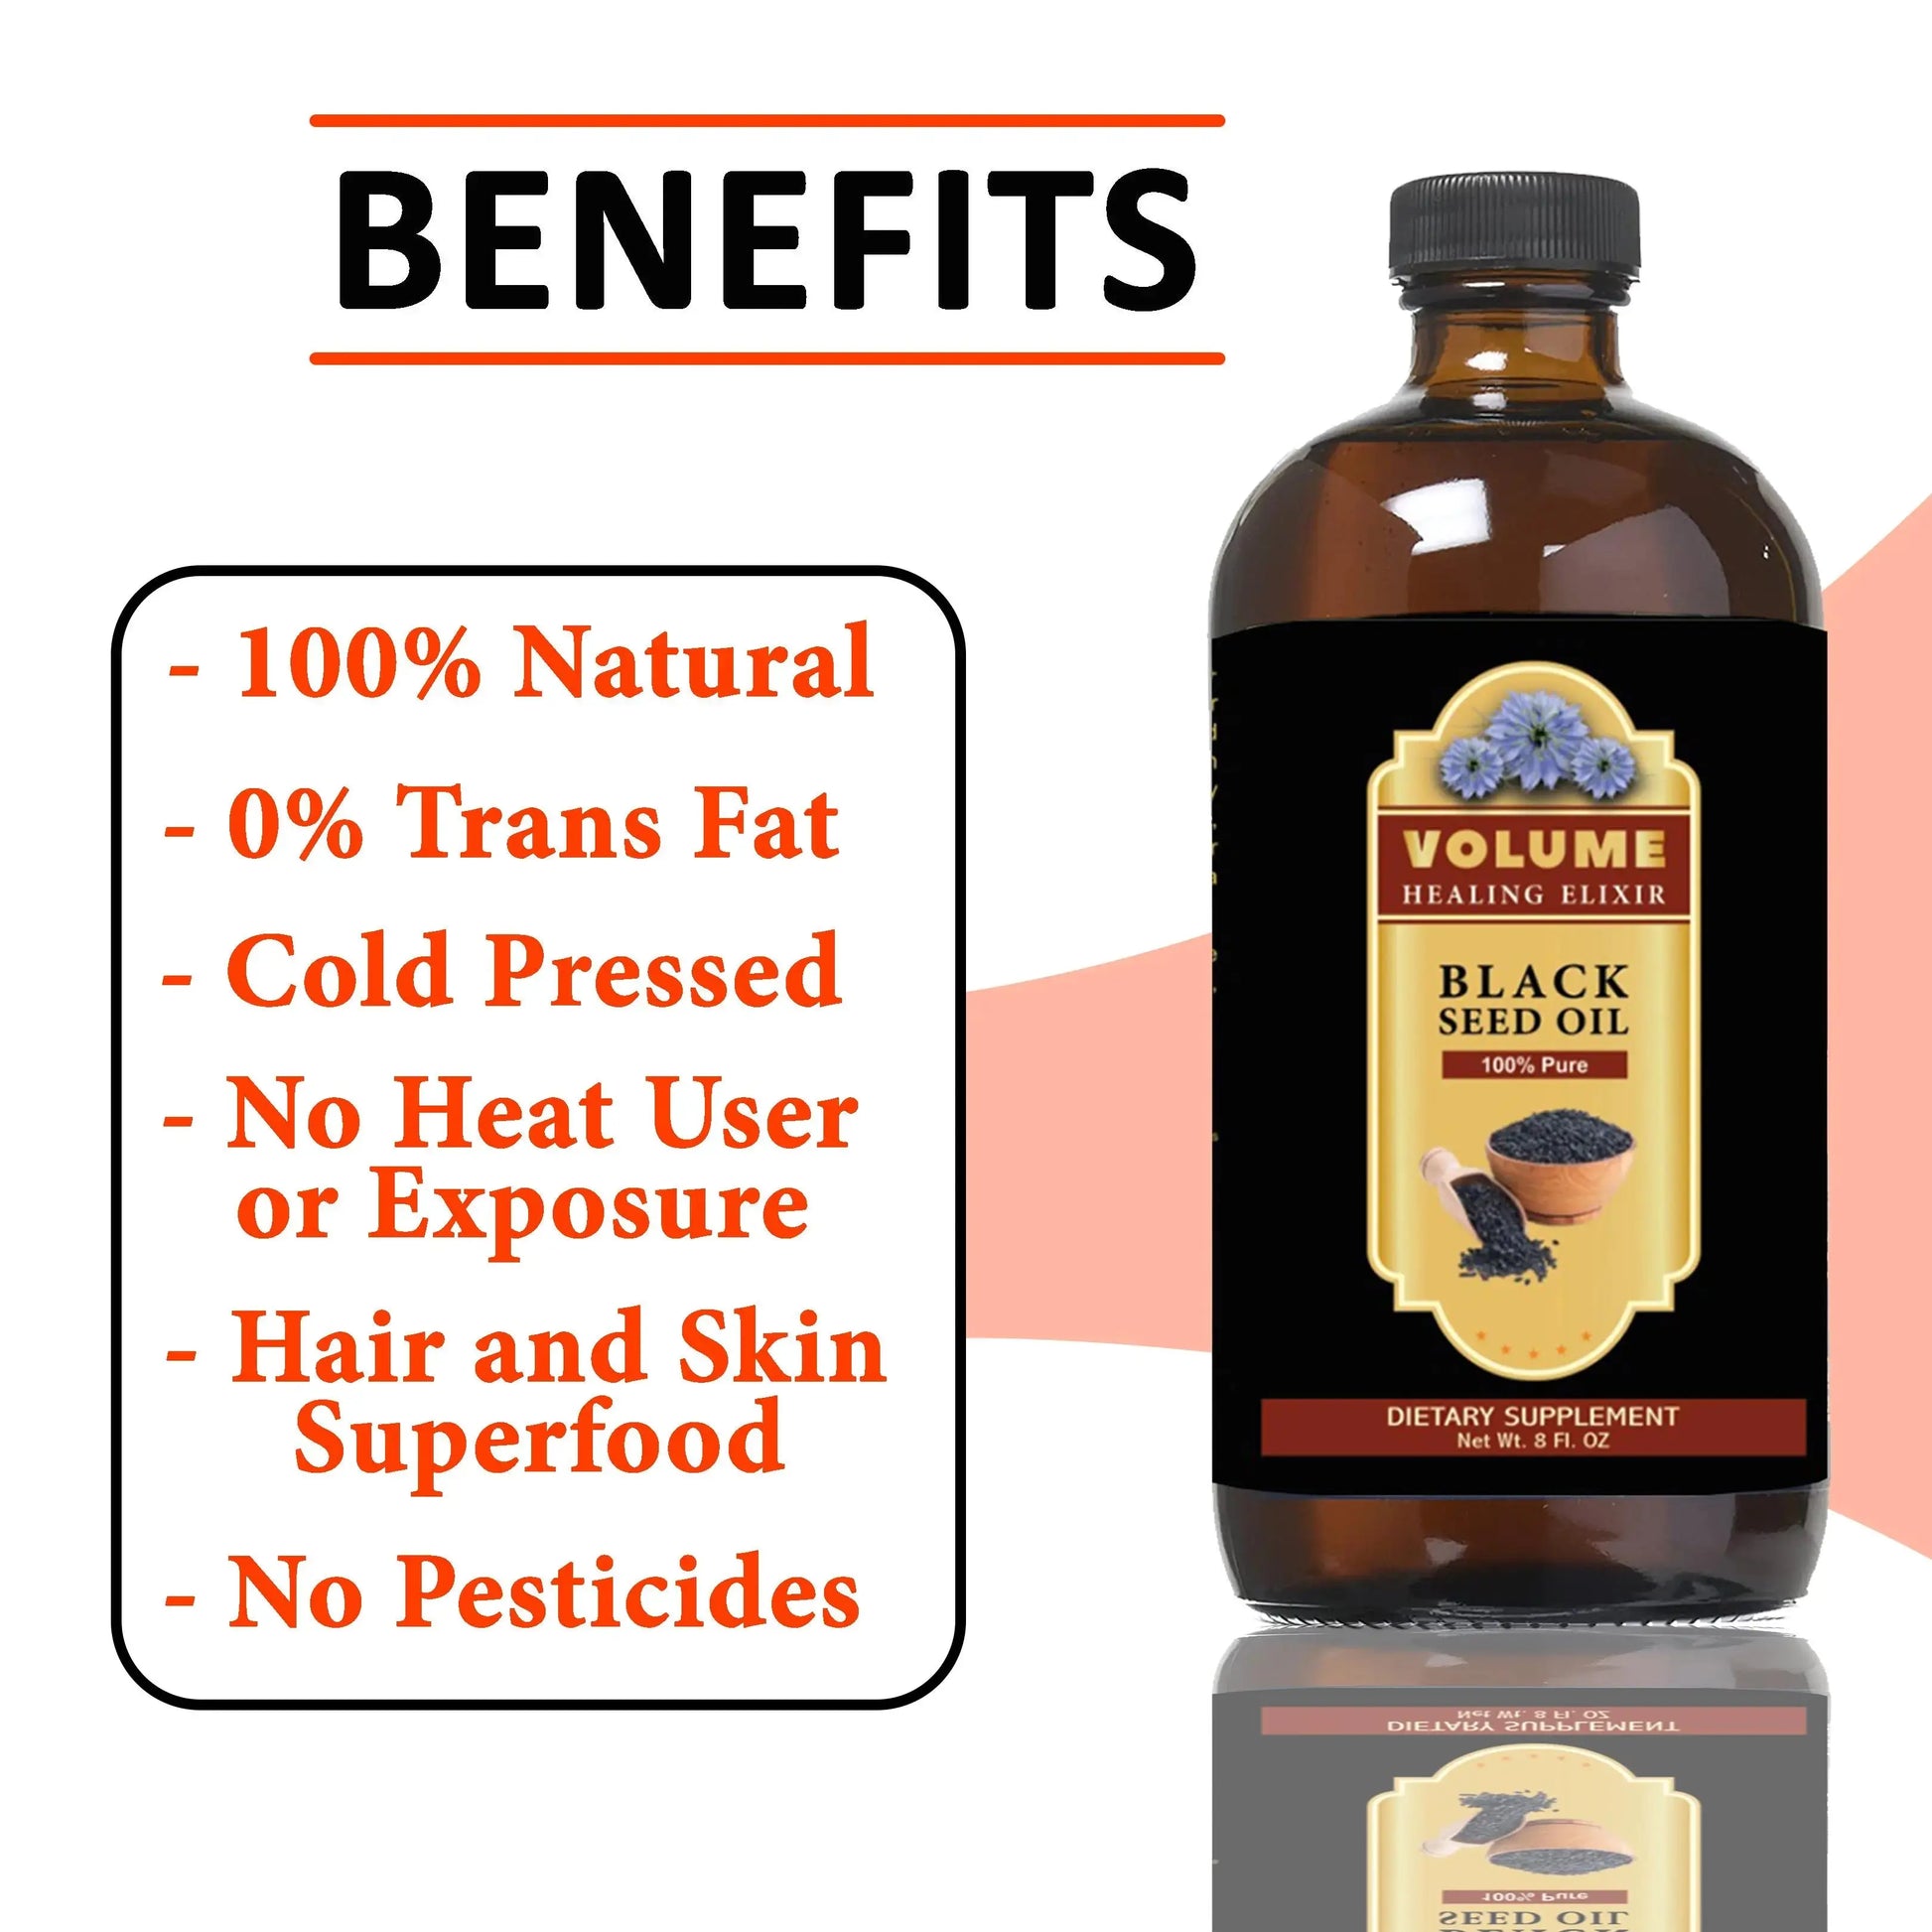 100% Pure Black Seed Oil (8oz) - Volume